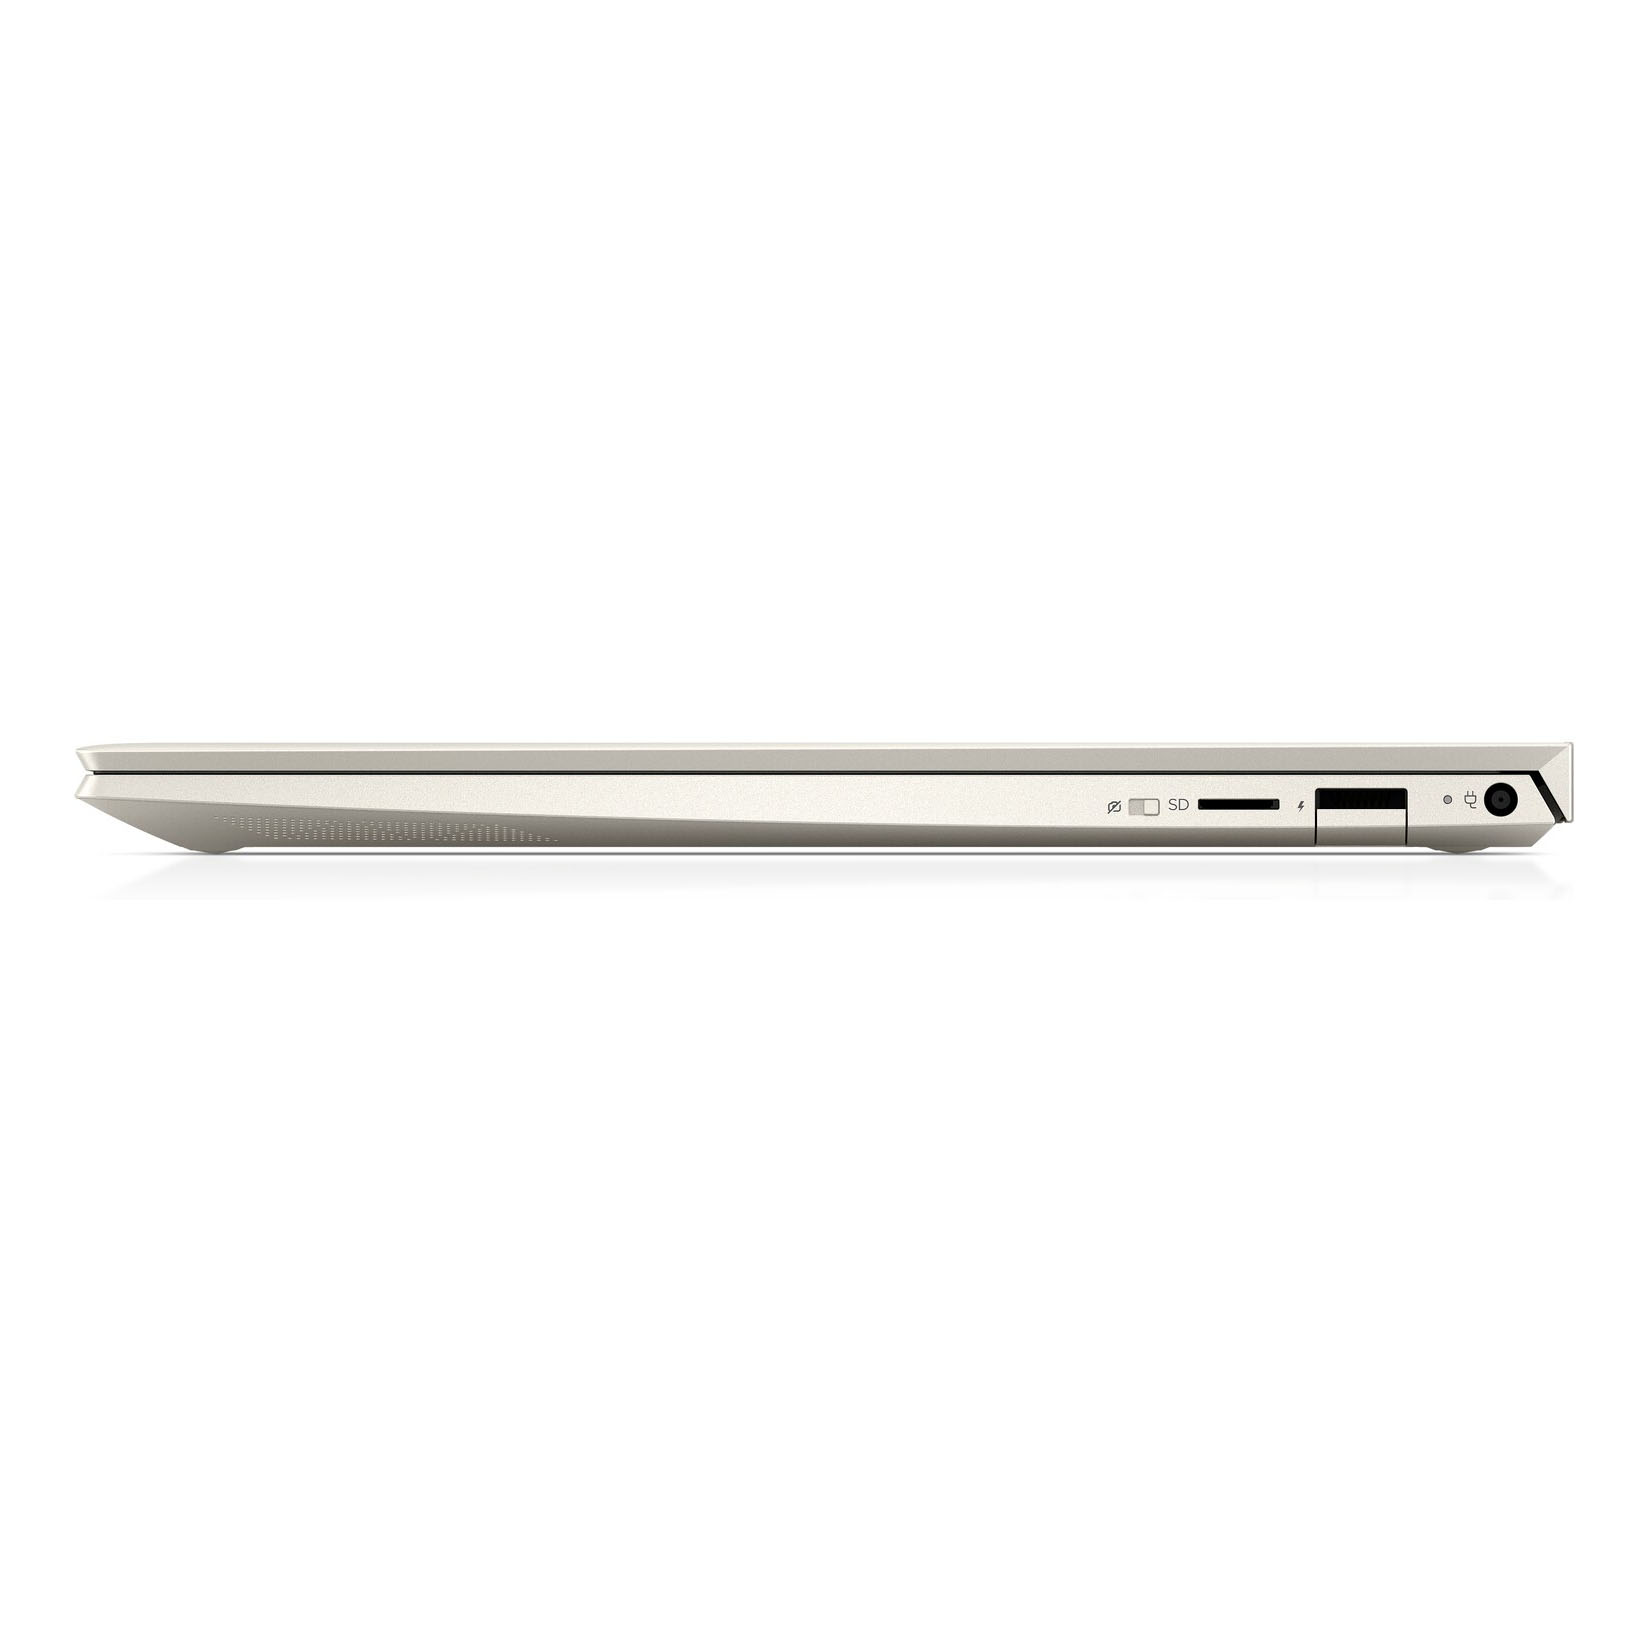 Laptop HP Envy 13 AQ1021TU (i5 10210U/8GB RAM/256GB SSD/13.3 inch FHD/FP/Win 10/Vàng) - 8QN79PA